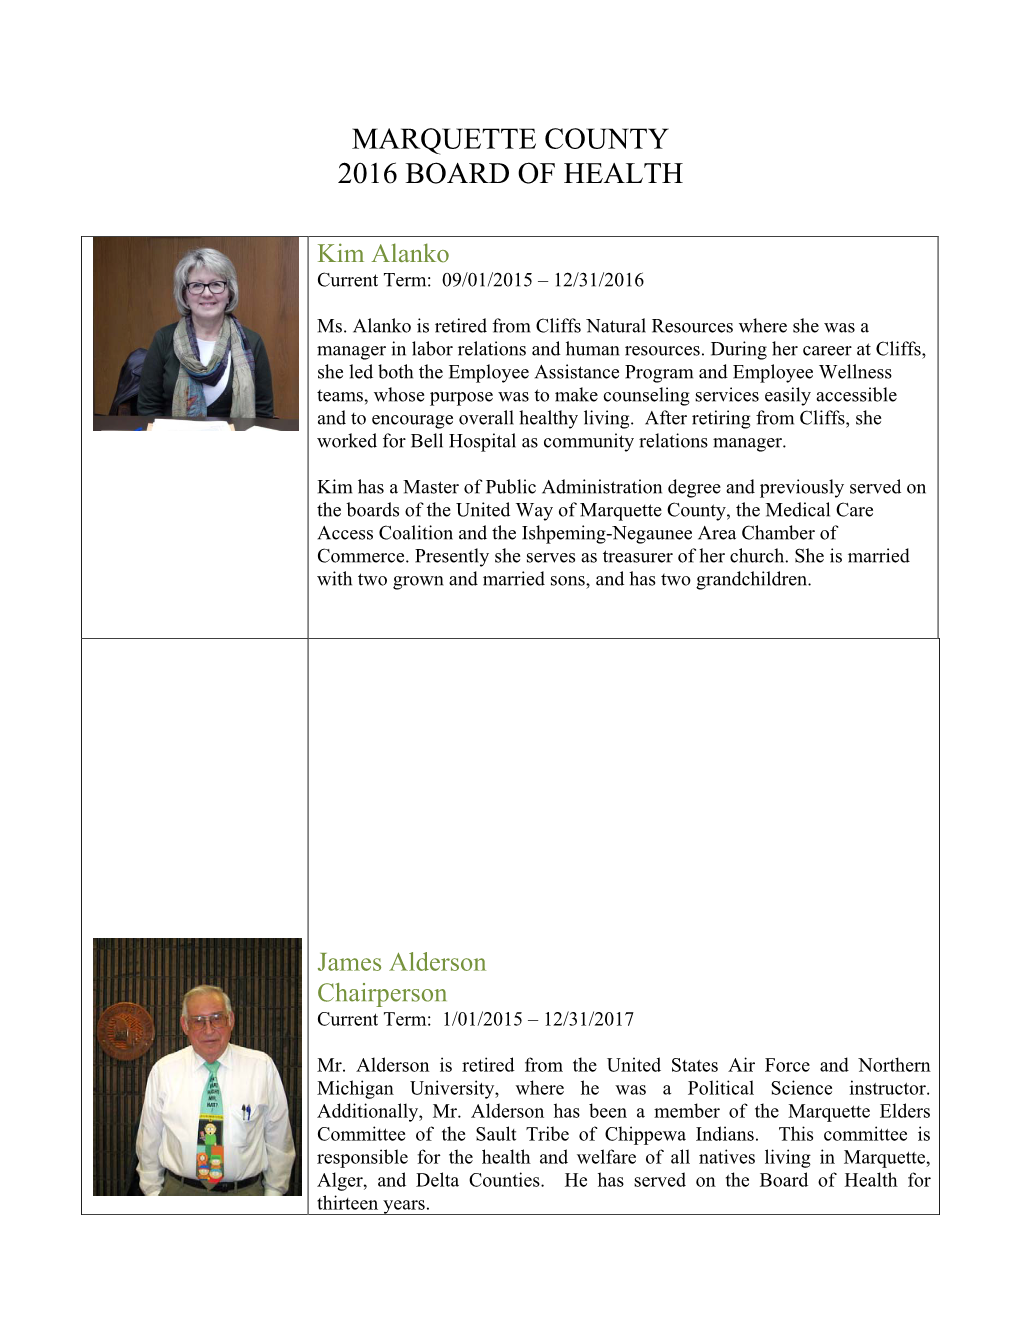 Marquette County 2016 Board of Health